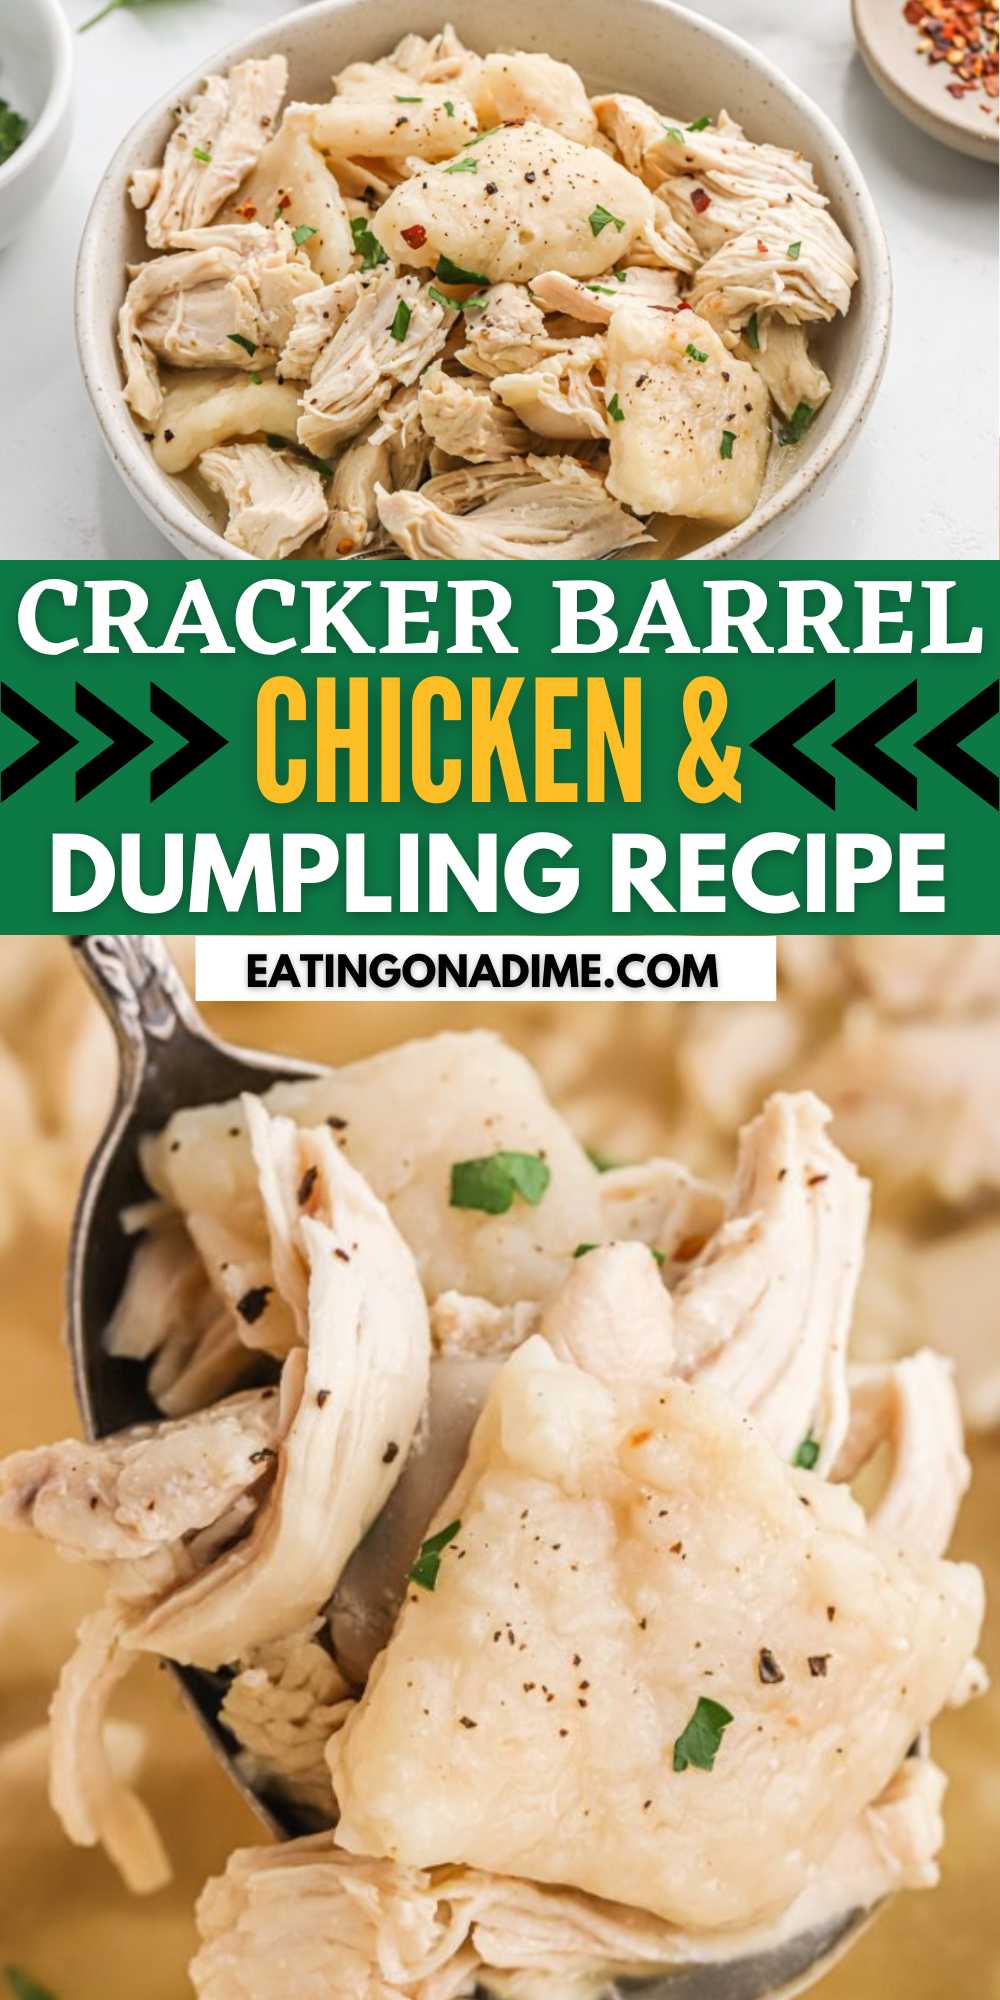 Chicken and Dumplings Recipe - Flat dumplings just like Cracker Barrel